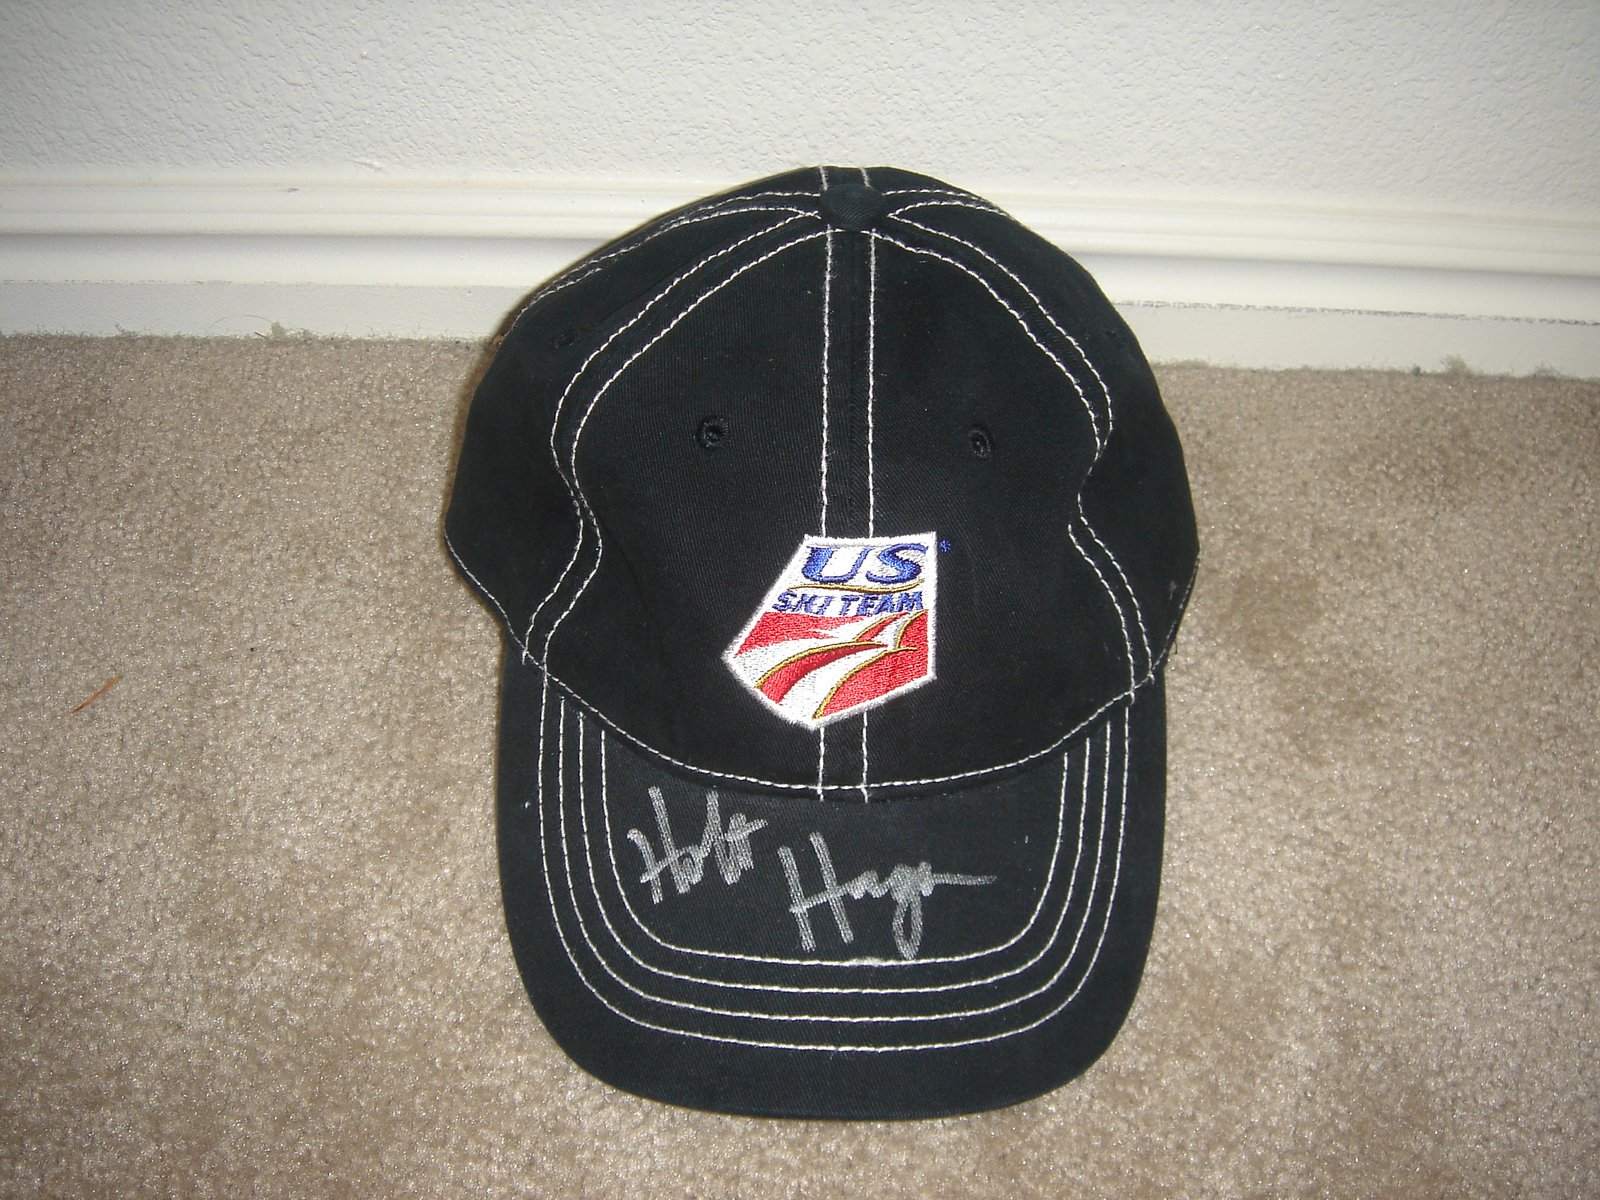 Holt Haga Autographed U.S. Ski Team Hat